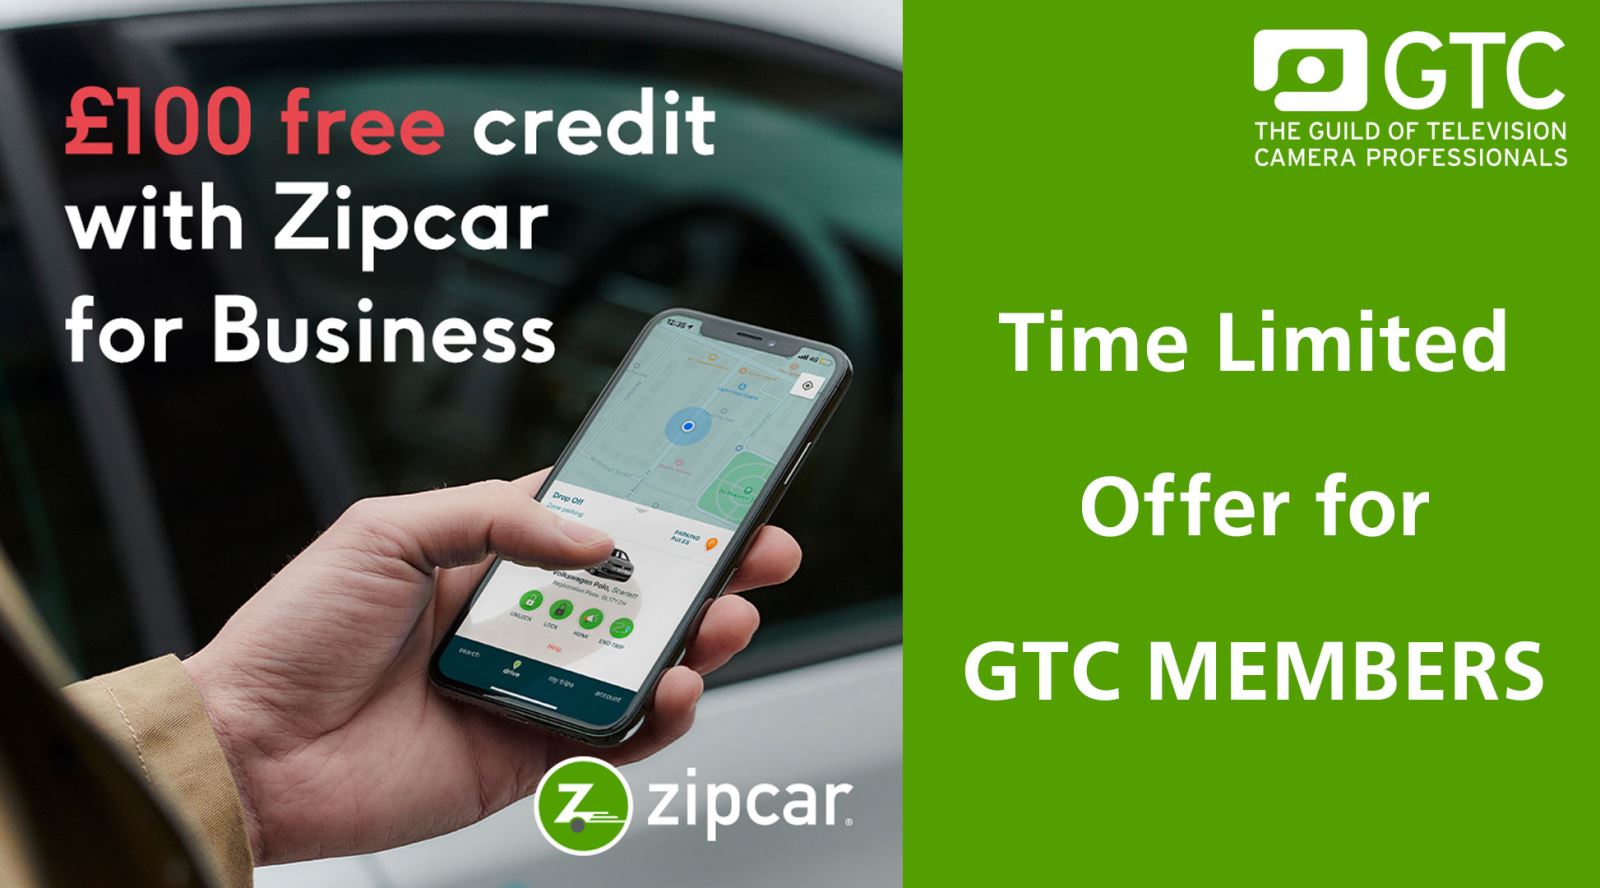 Zipcar offer GTC members £100 in driving credit